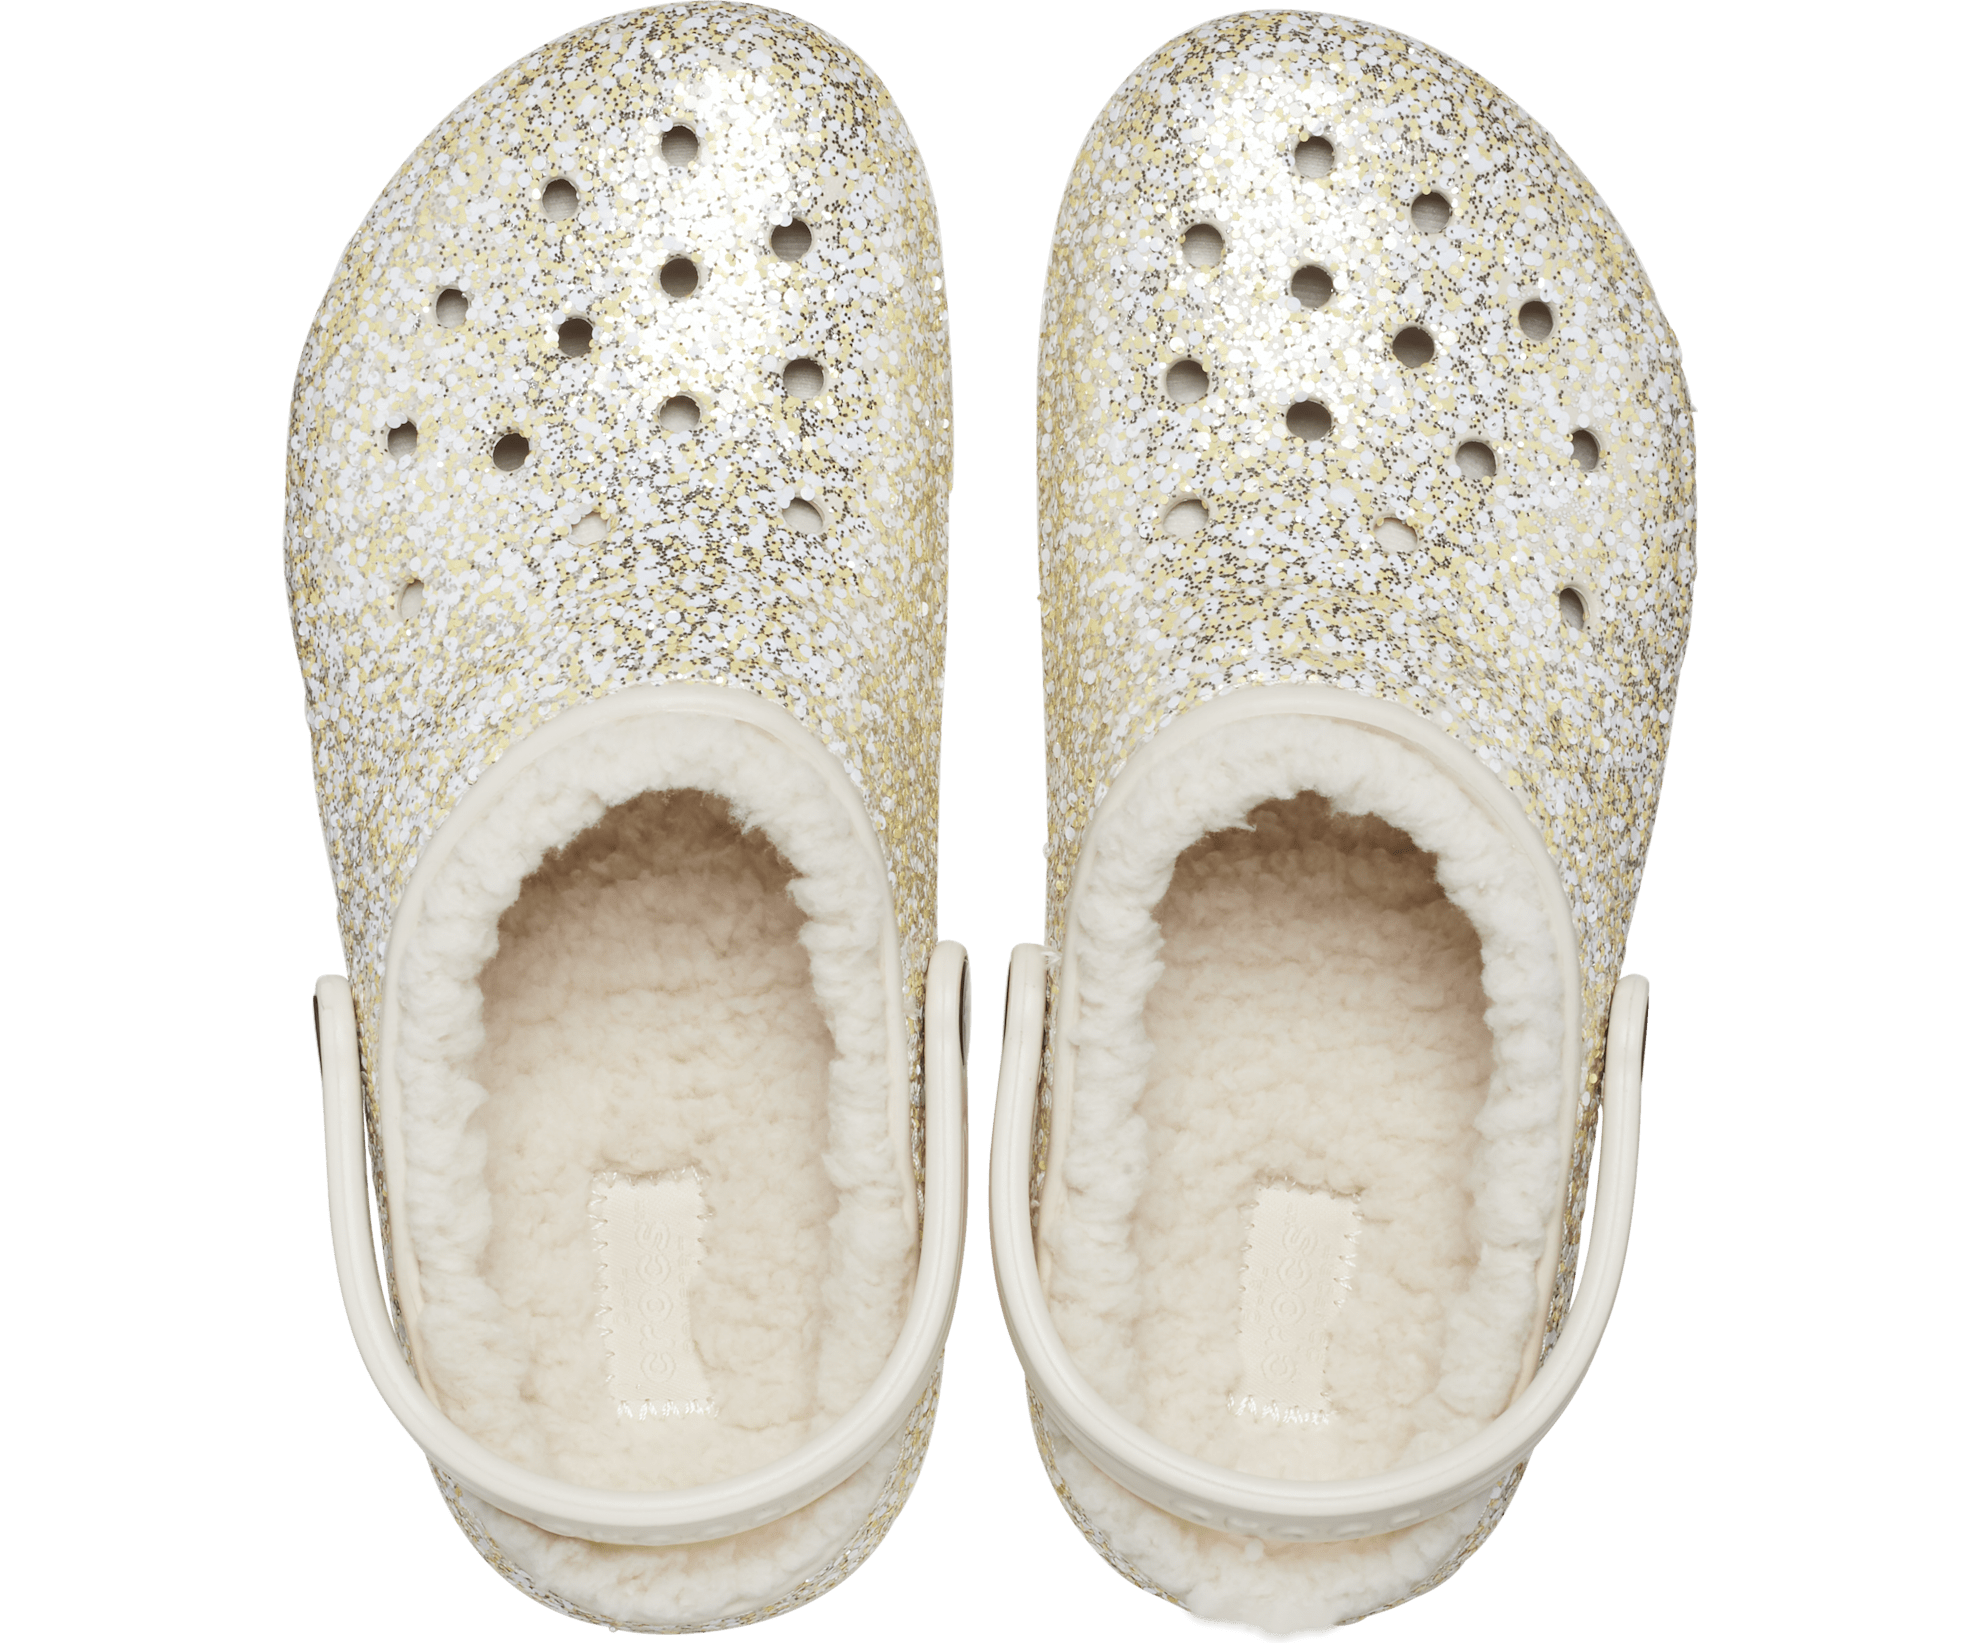 Crocs Kids Classic Lined Glitter Clog - Stucco